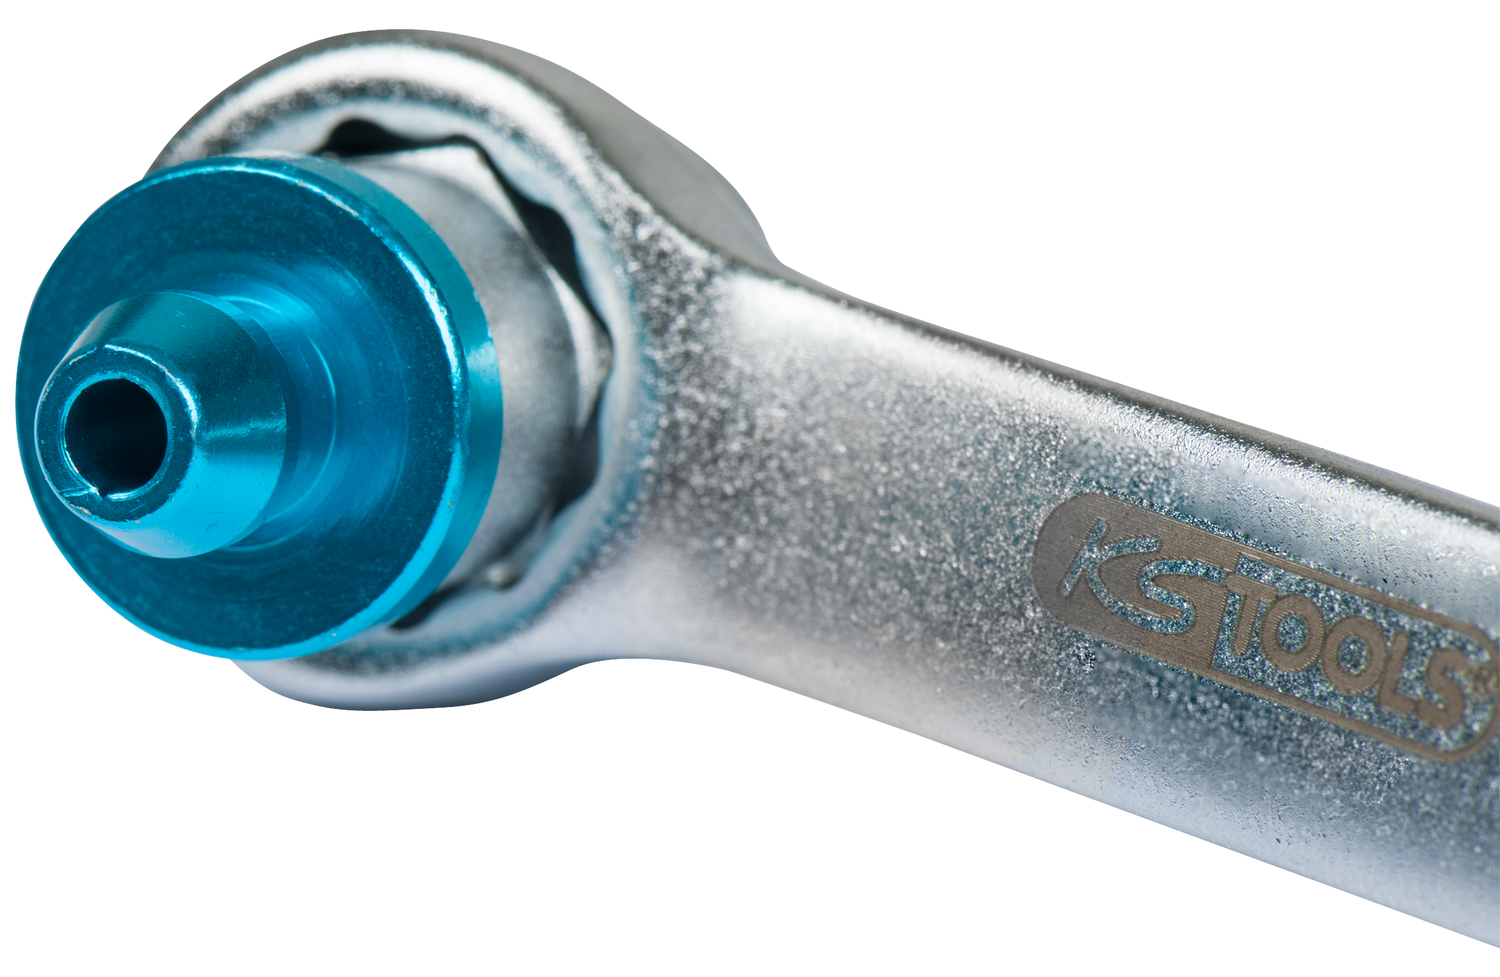 Bremsen-Entlüftungsschlüssel, extra kurz, 8 mm, blau